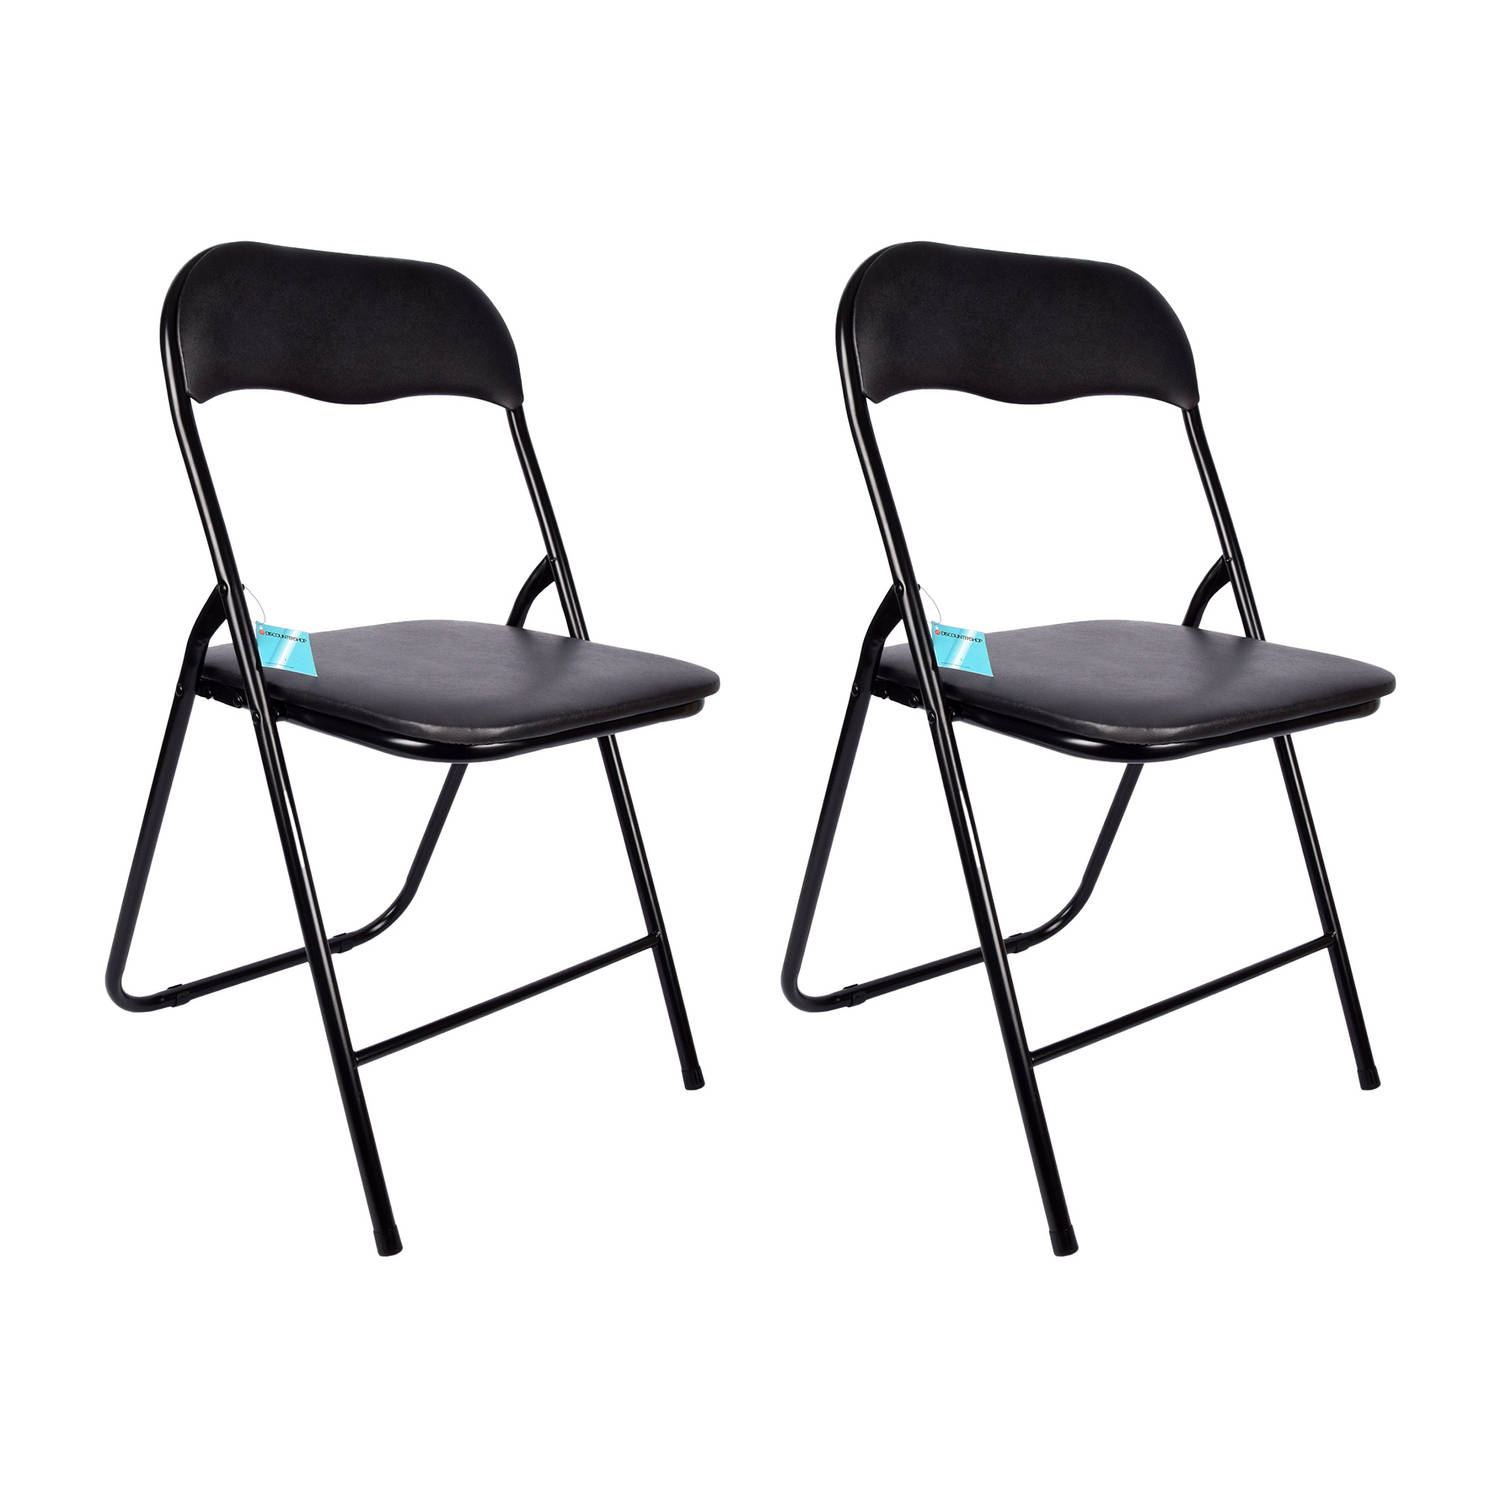 Opvouwbare Stoelen Set van 2 - Zwart | Polyester & Metaal | 37.5x39x78.5cm | Comfortabel Lichtgewicht campingstoel | Topkwaliteit zwart stoel voor Eetkamer, Camping & Meer